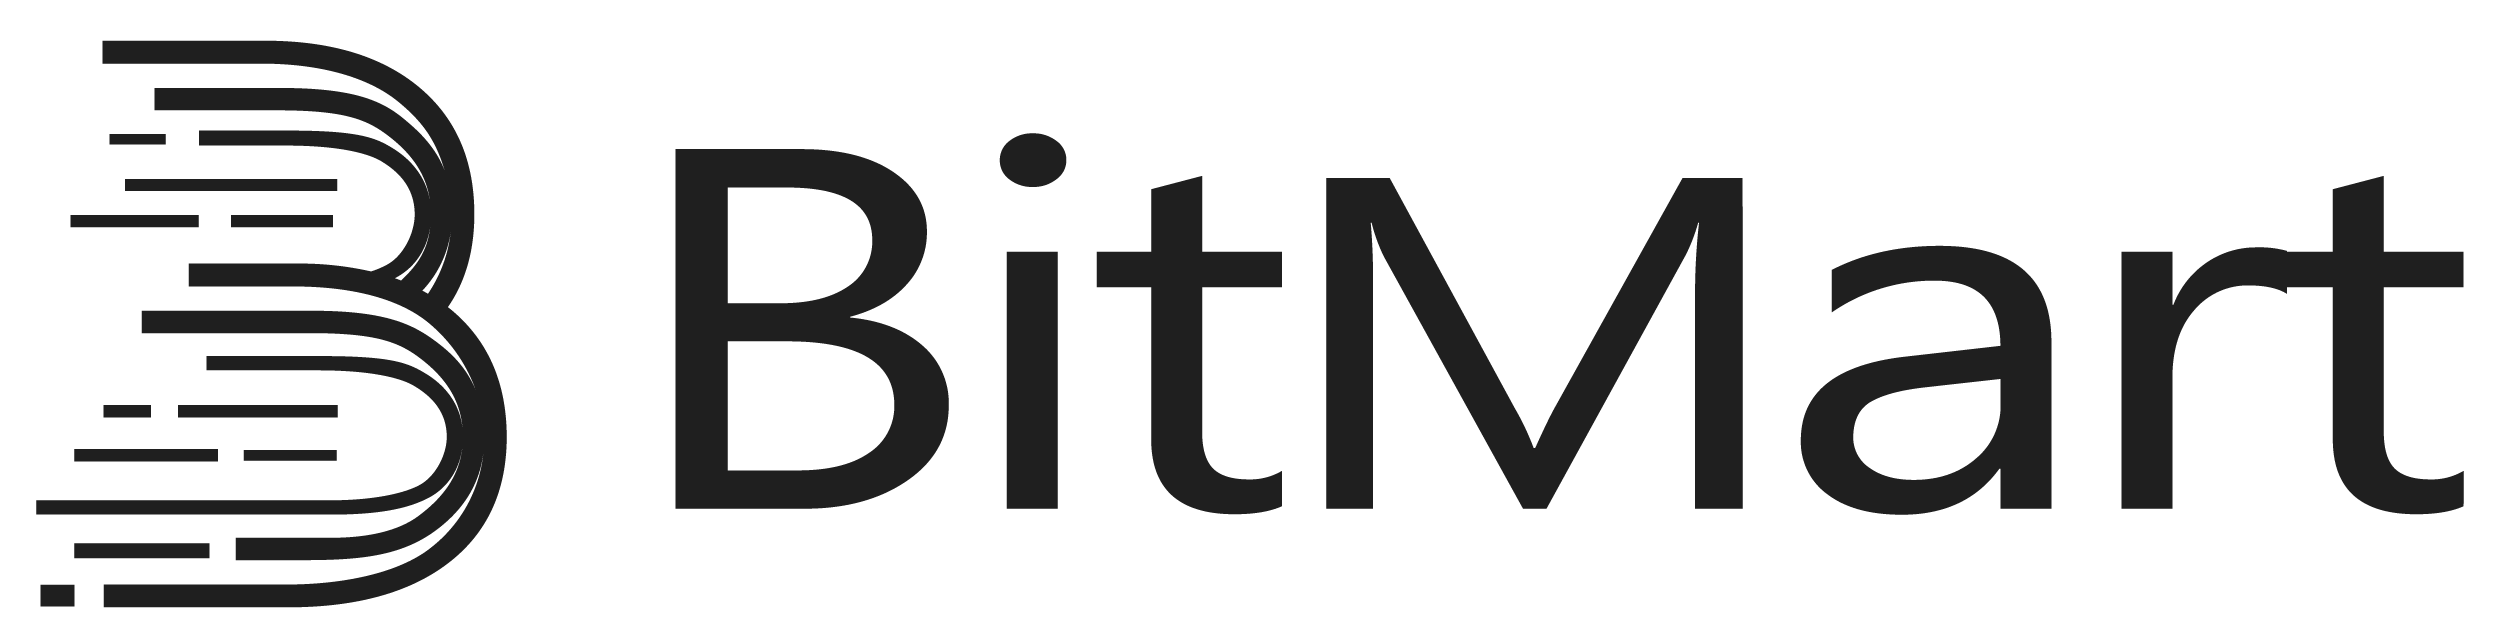 full-bitmart-logo.webp